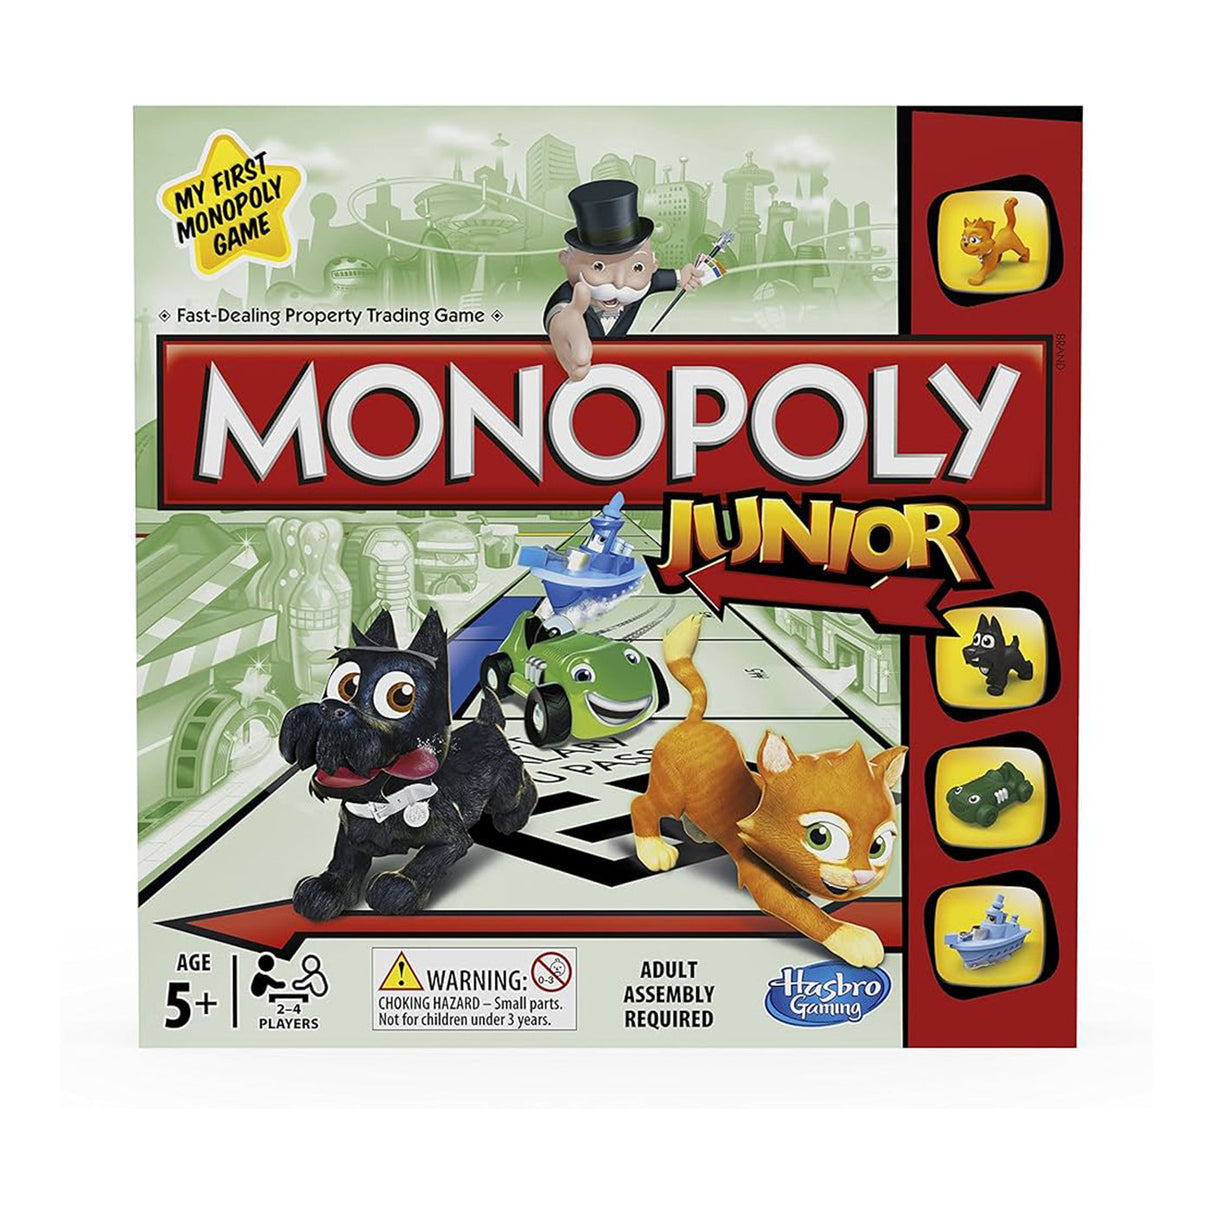 Junior Monopoly Classic